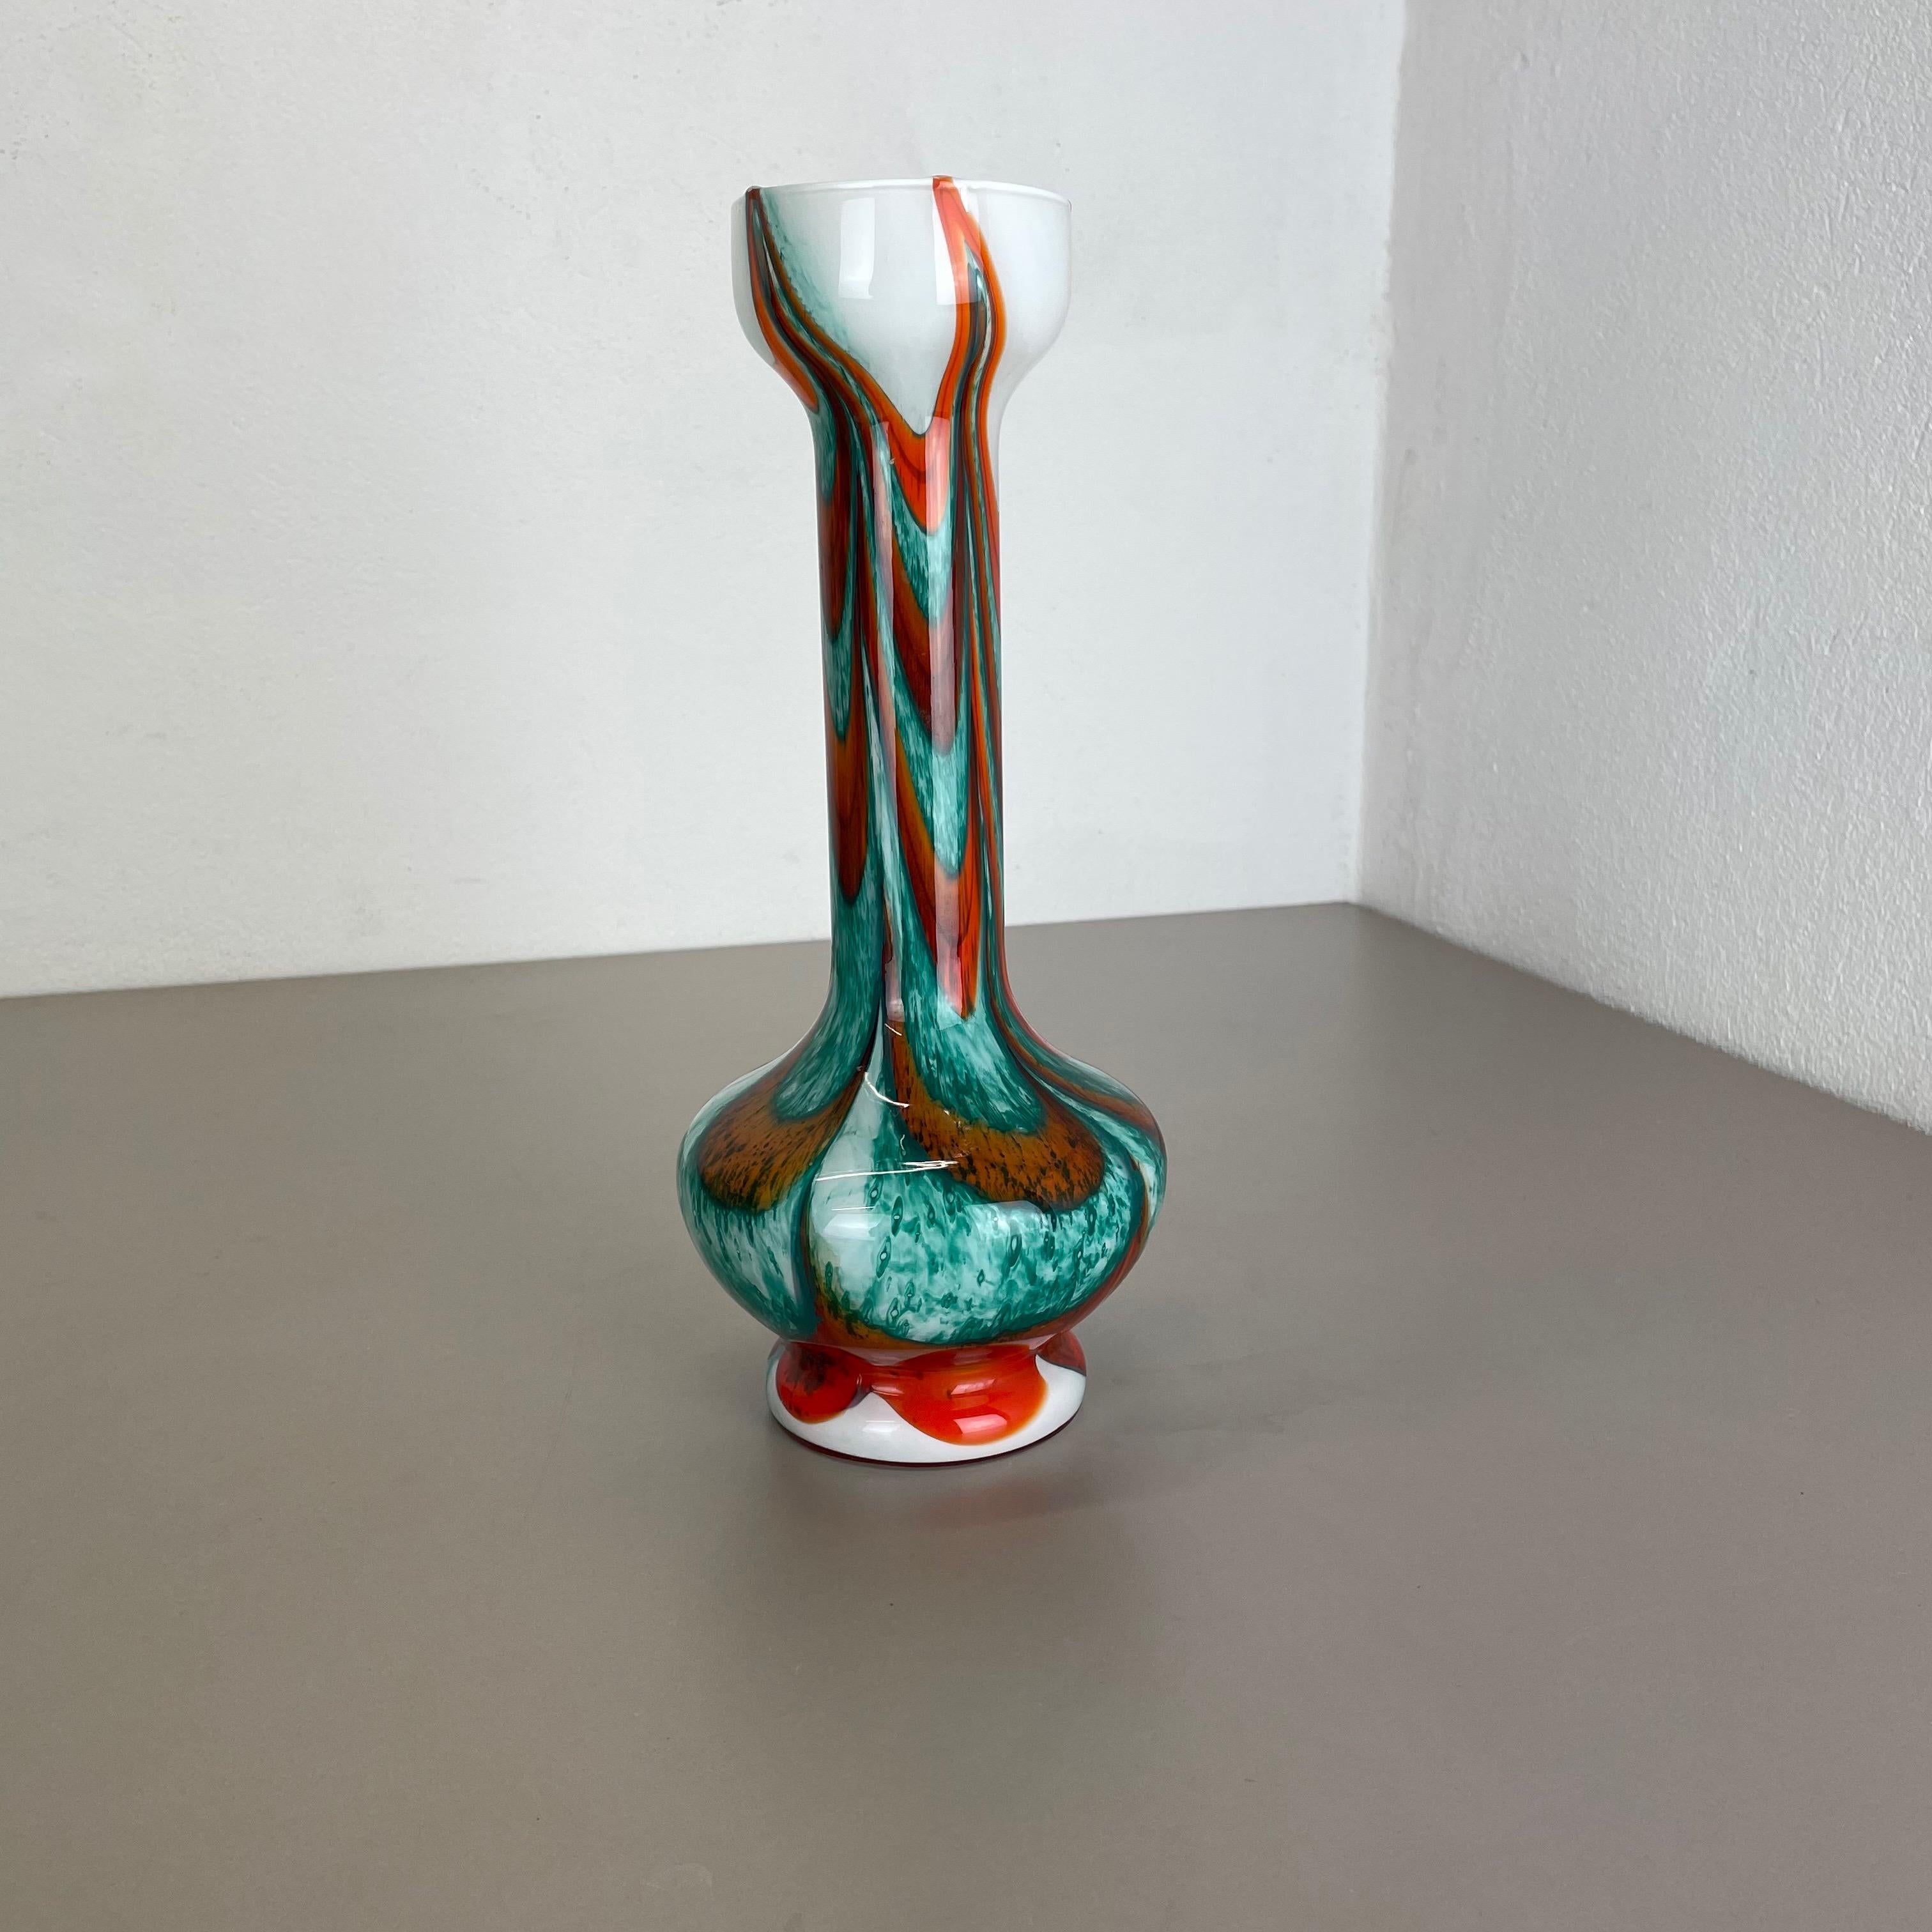 Artikel:

Pop-Art-Vase


Produzent:

Opalin Florenz



Jahrzehnt:

1970s




Originale mundgeblasene Pop-Art-Vase aus den 1970er Jahren, hergestellt in Italien von Opaline Florenz. Hergestellt aus hochwertigem italienischem